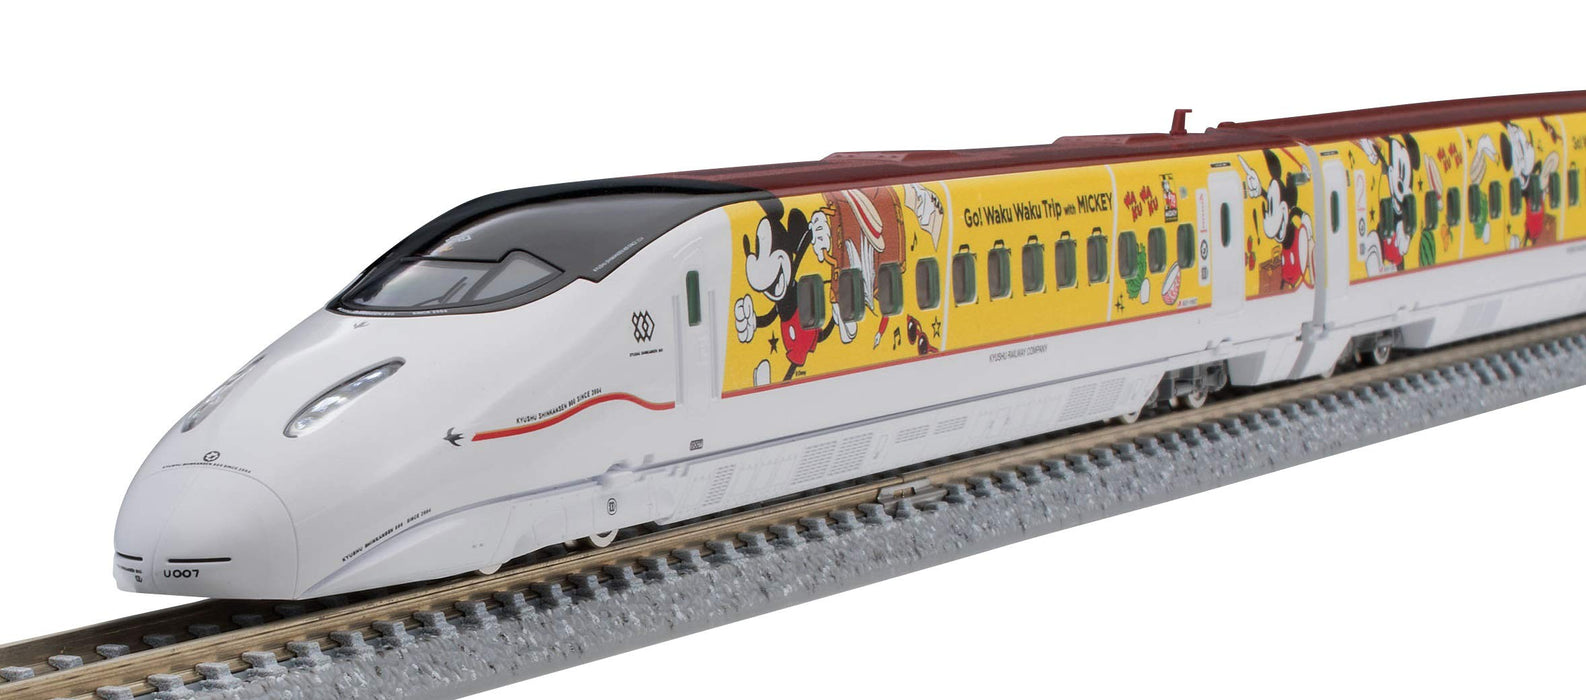 Tomytec Tomix N Gauge Kyushu Shinkansen 800 série 1000, ensemble de 6 voitures, modèle de train